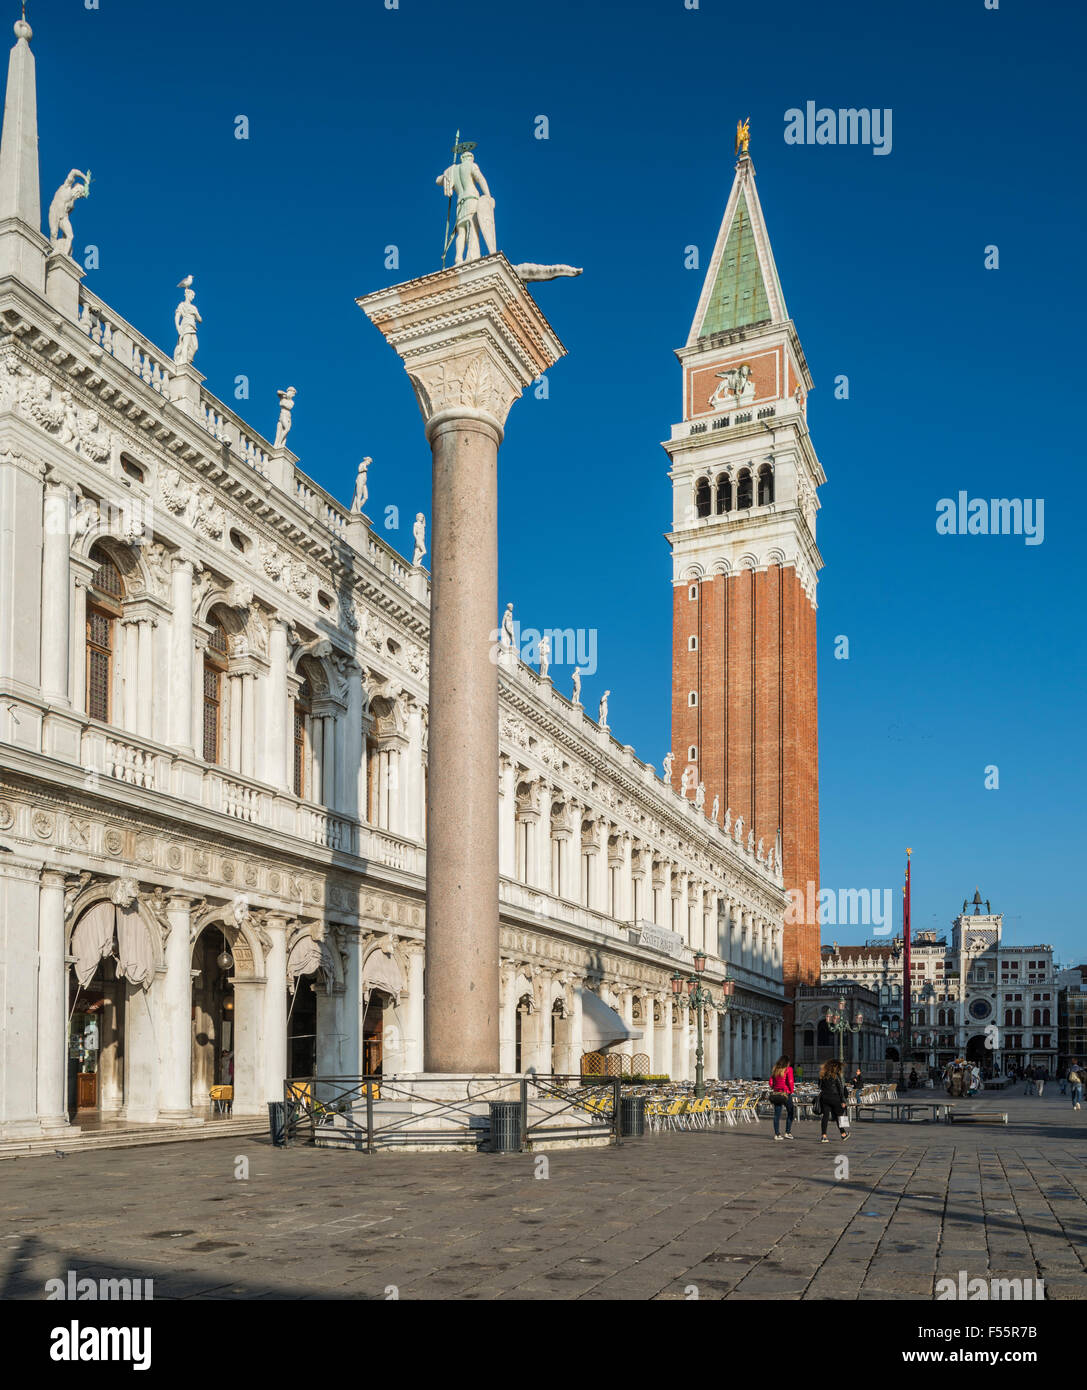 La Piazzetta San Marco con biblioteca y columna, el Campanile de San Marcos detrás, San Marco, Venecia, Venezia, Veneto, Italia Foto de stock